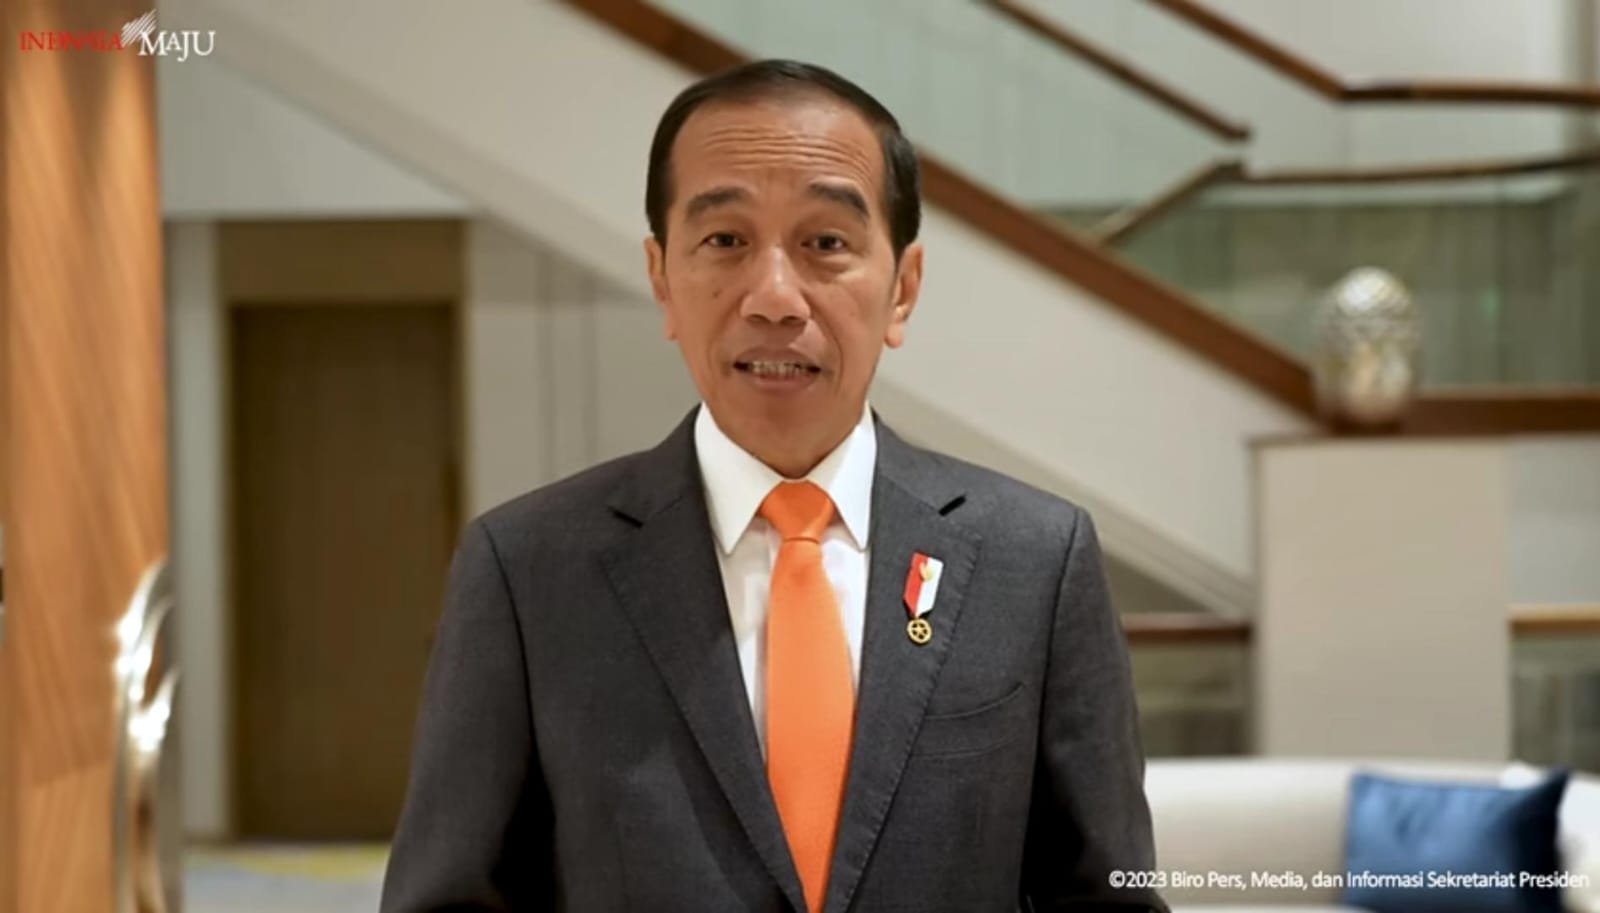 Jokowi Sentil Gubernur Bali Soal Baliho Ganjar-Mahfud dan Atribut PDIP Dicopot: Izin dan Netral Dong!